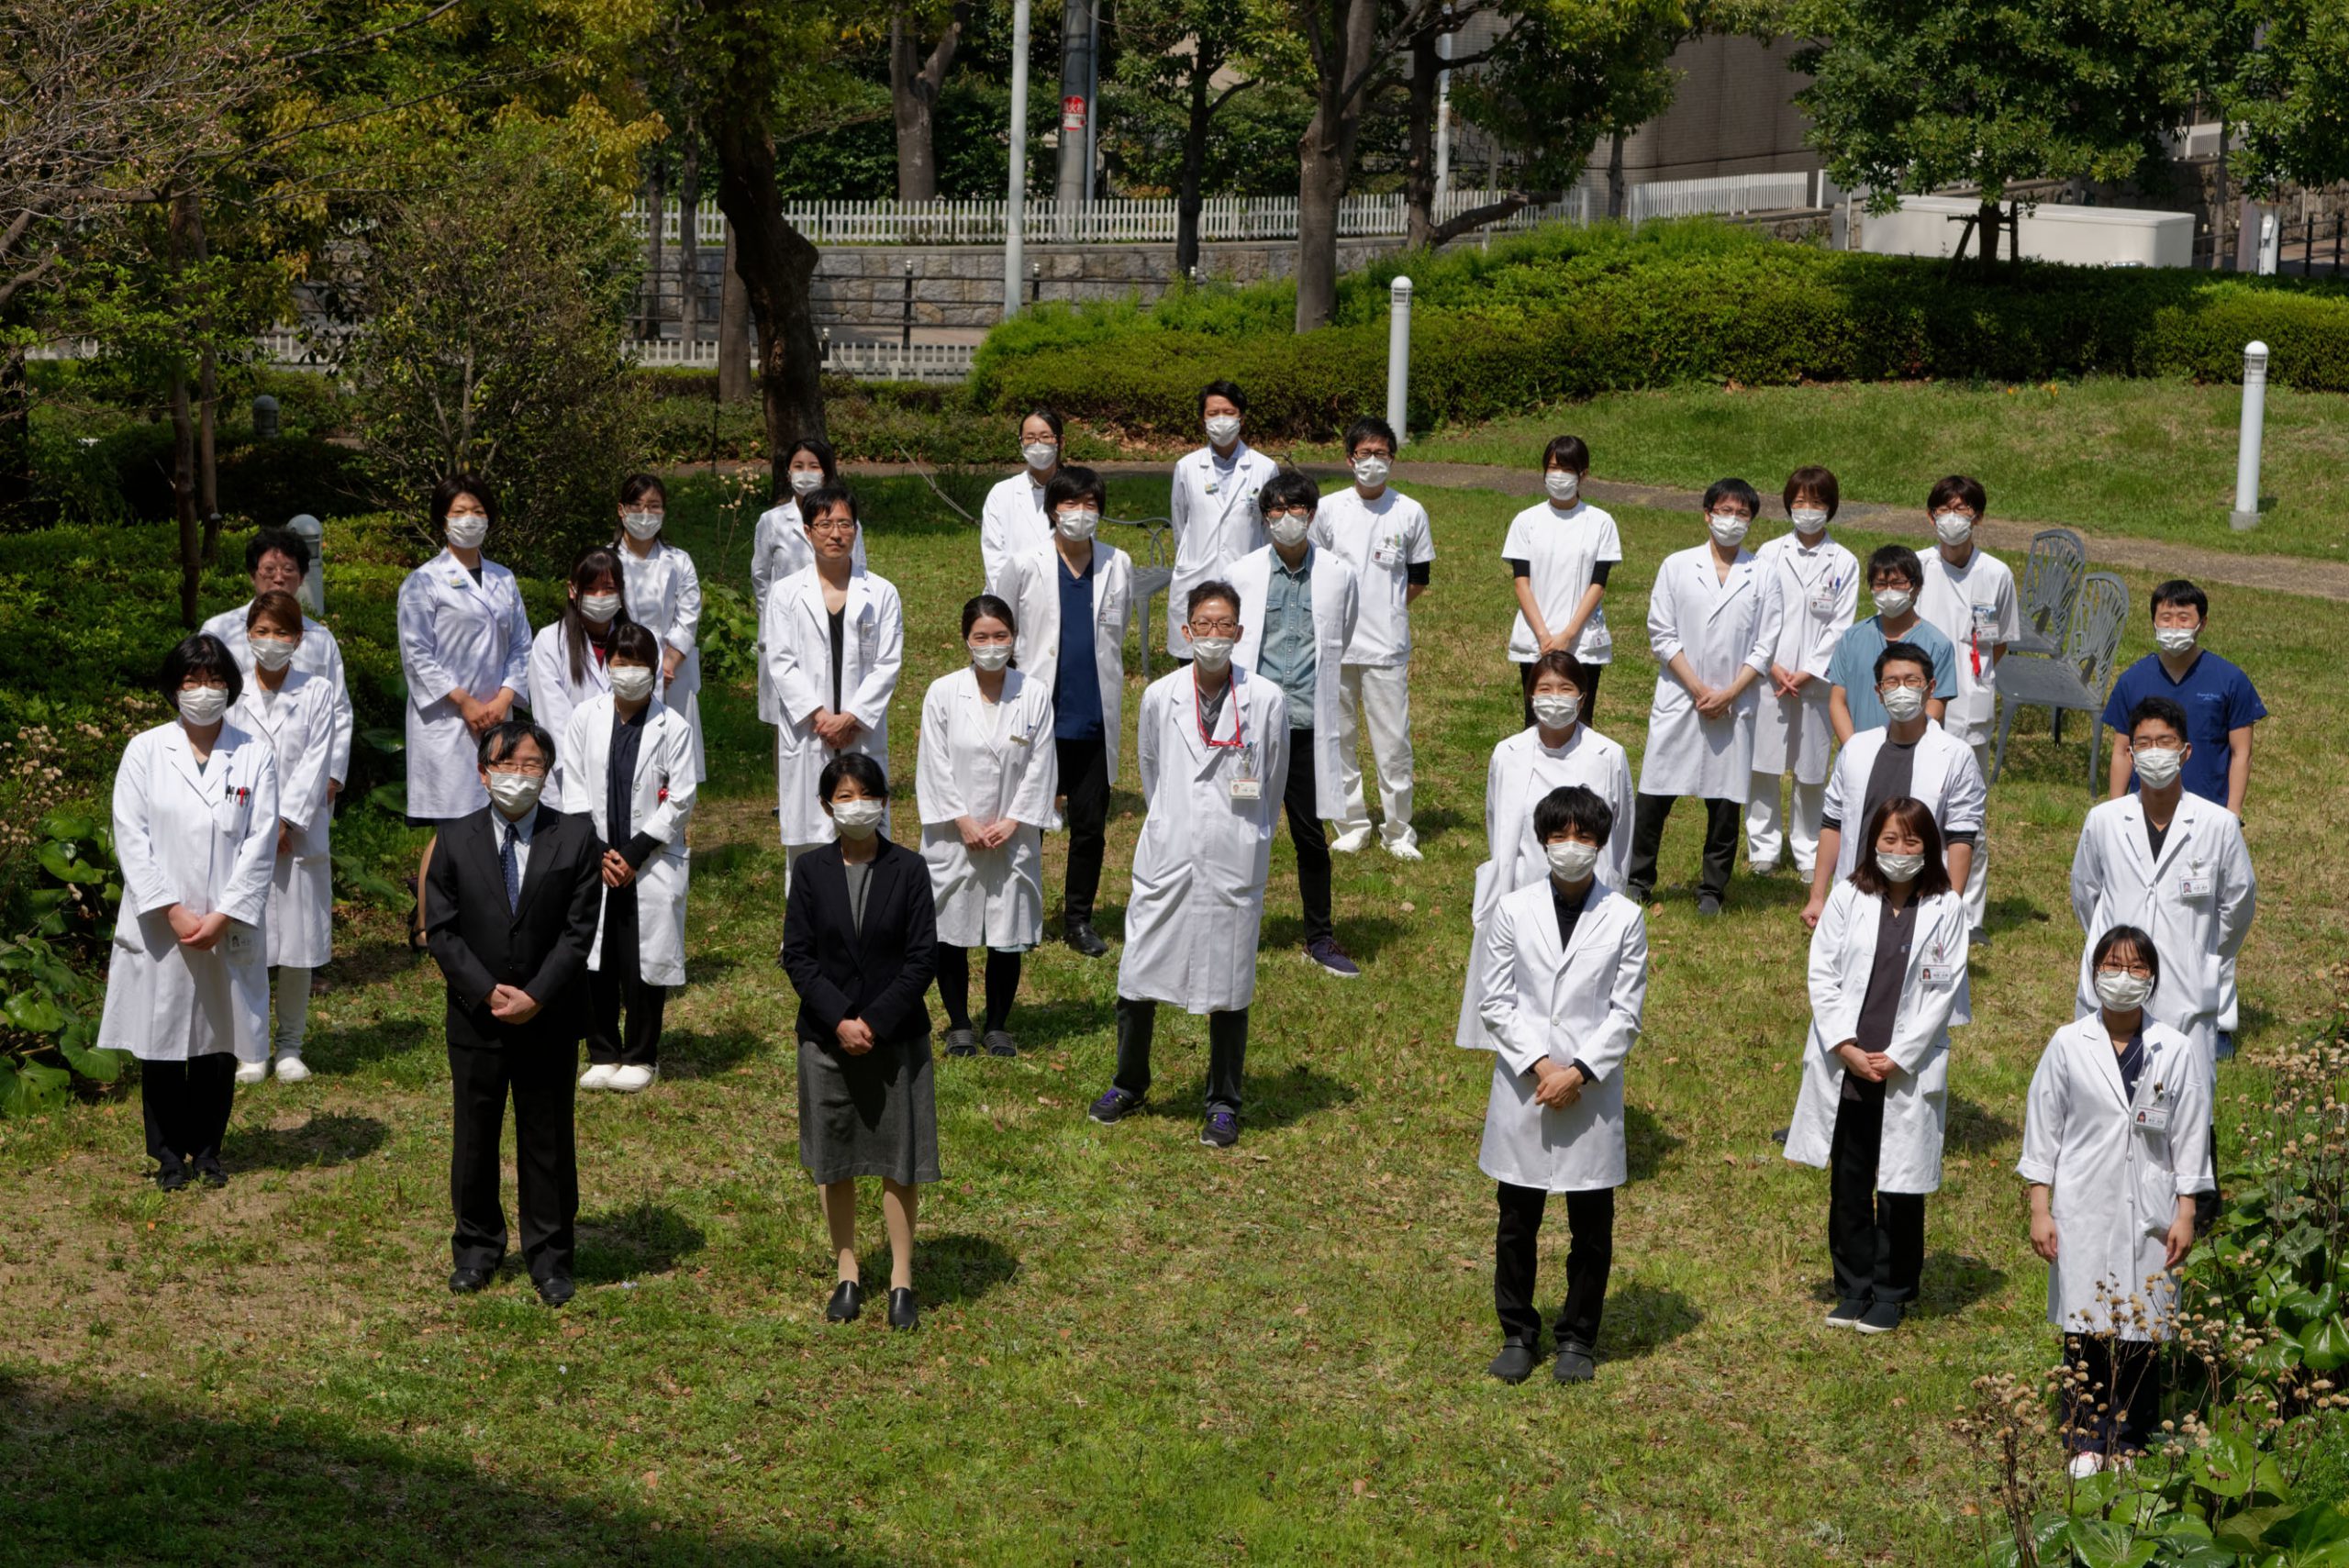 年度 医局合同集合写真 大阪市立大学 放射線診断学 Ivr学